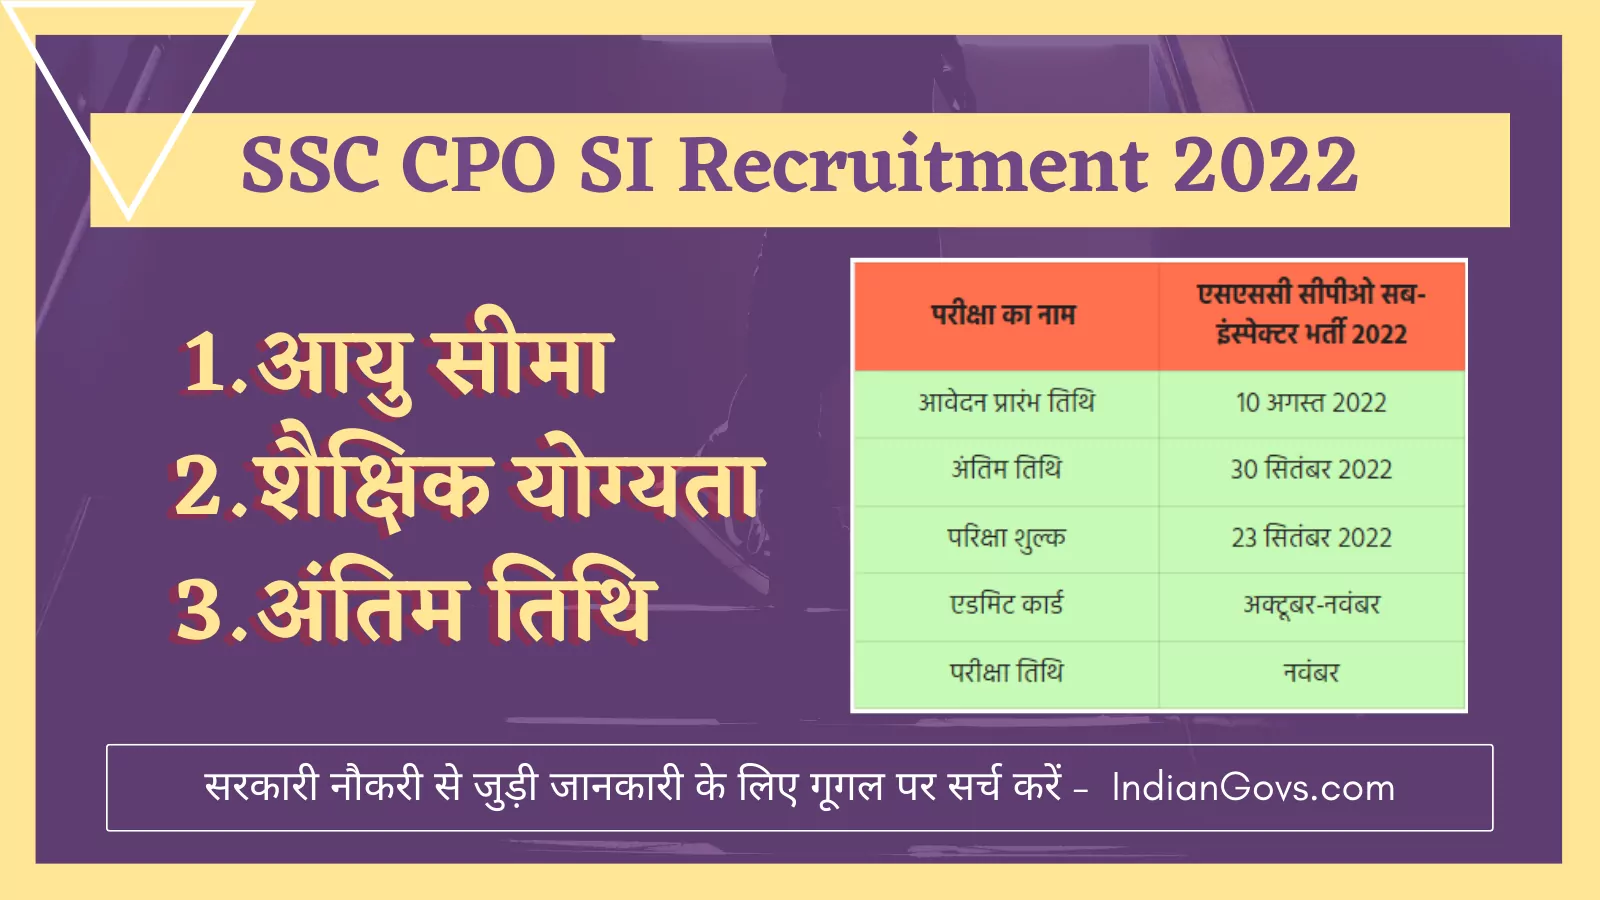 ssc cpo si recruitment 2022 in hindi